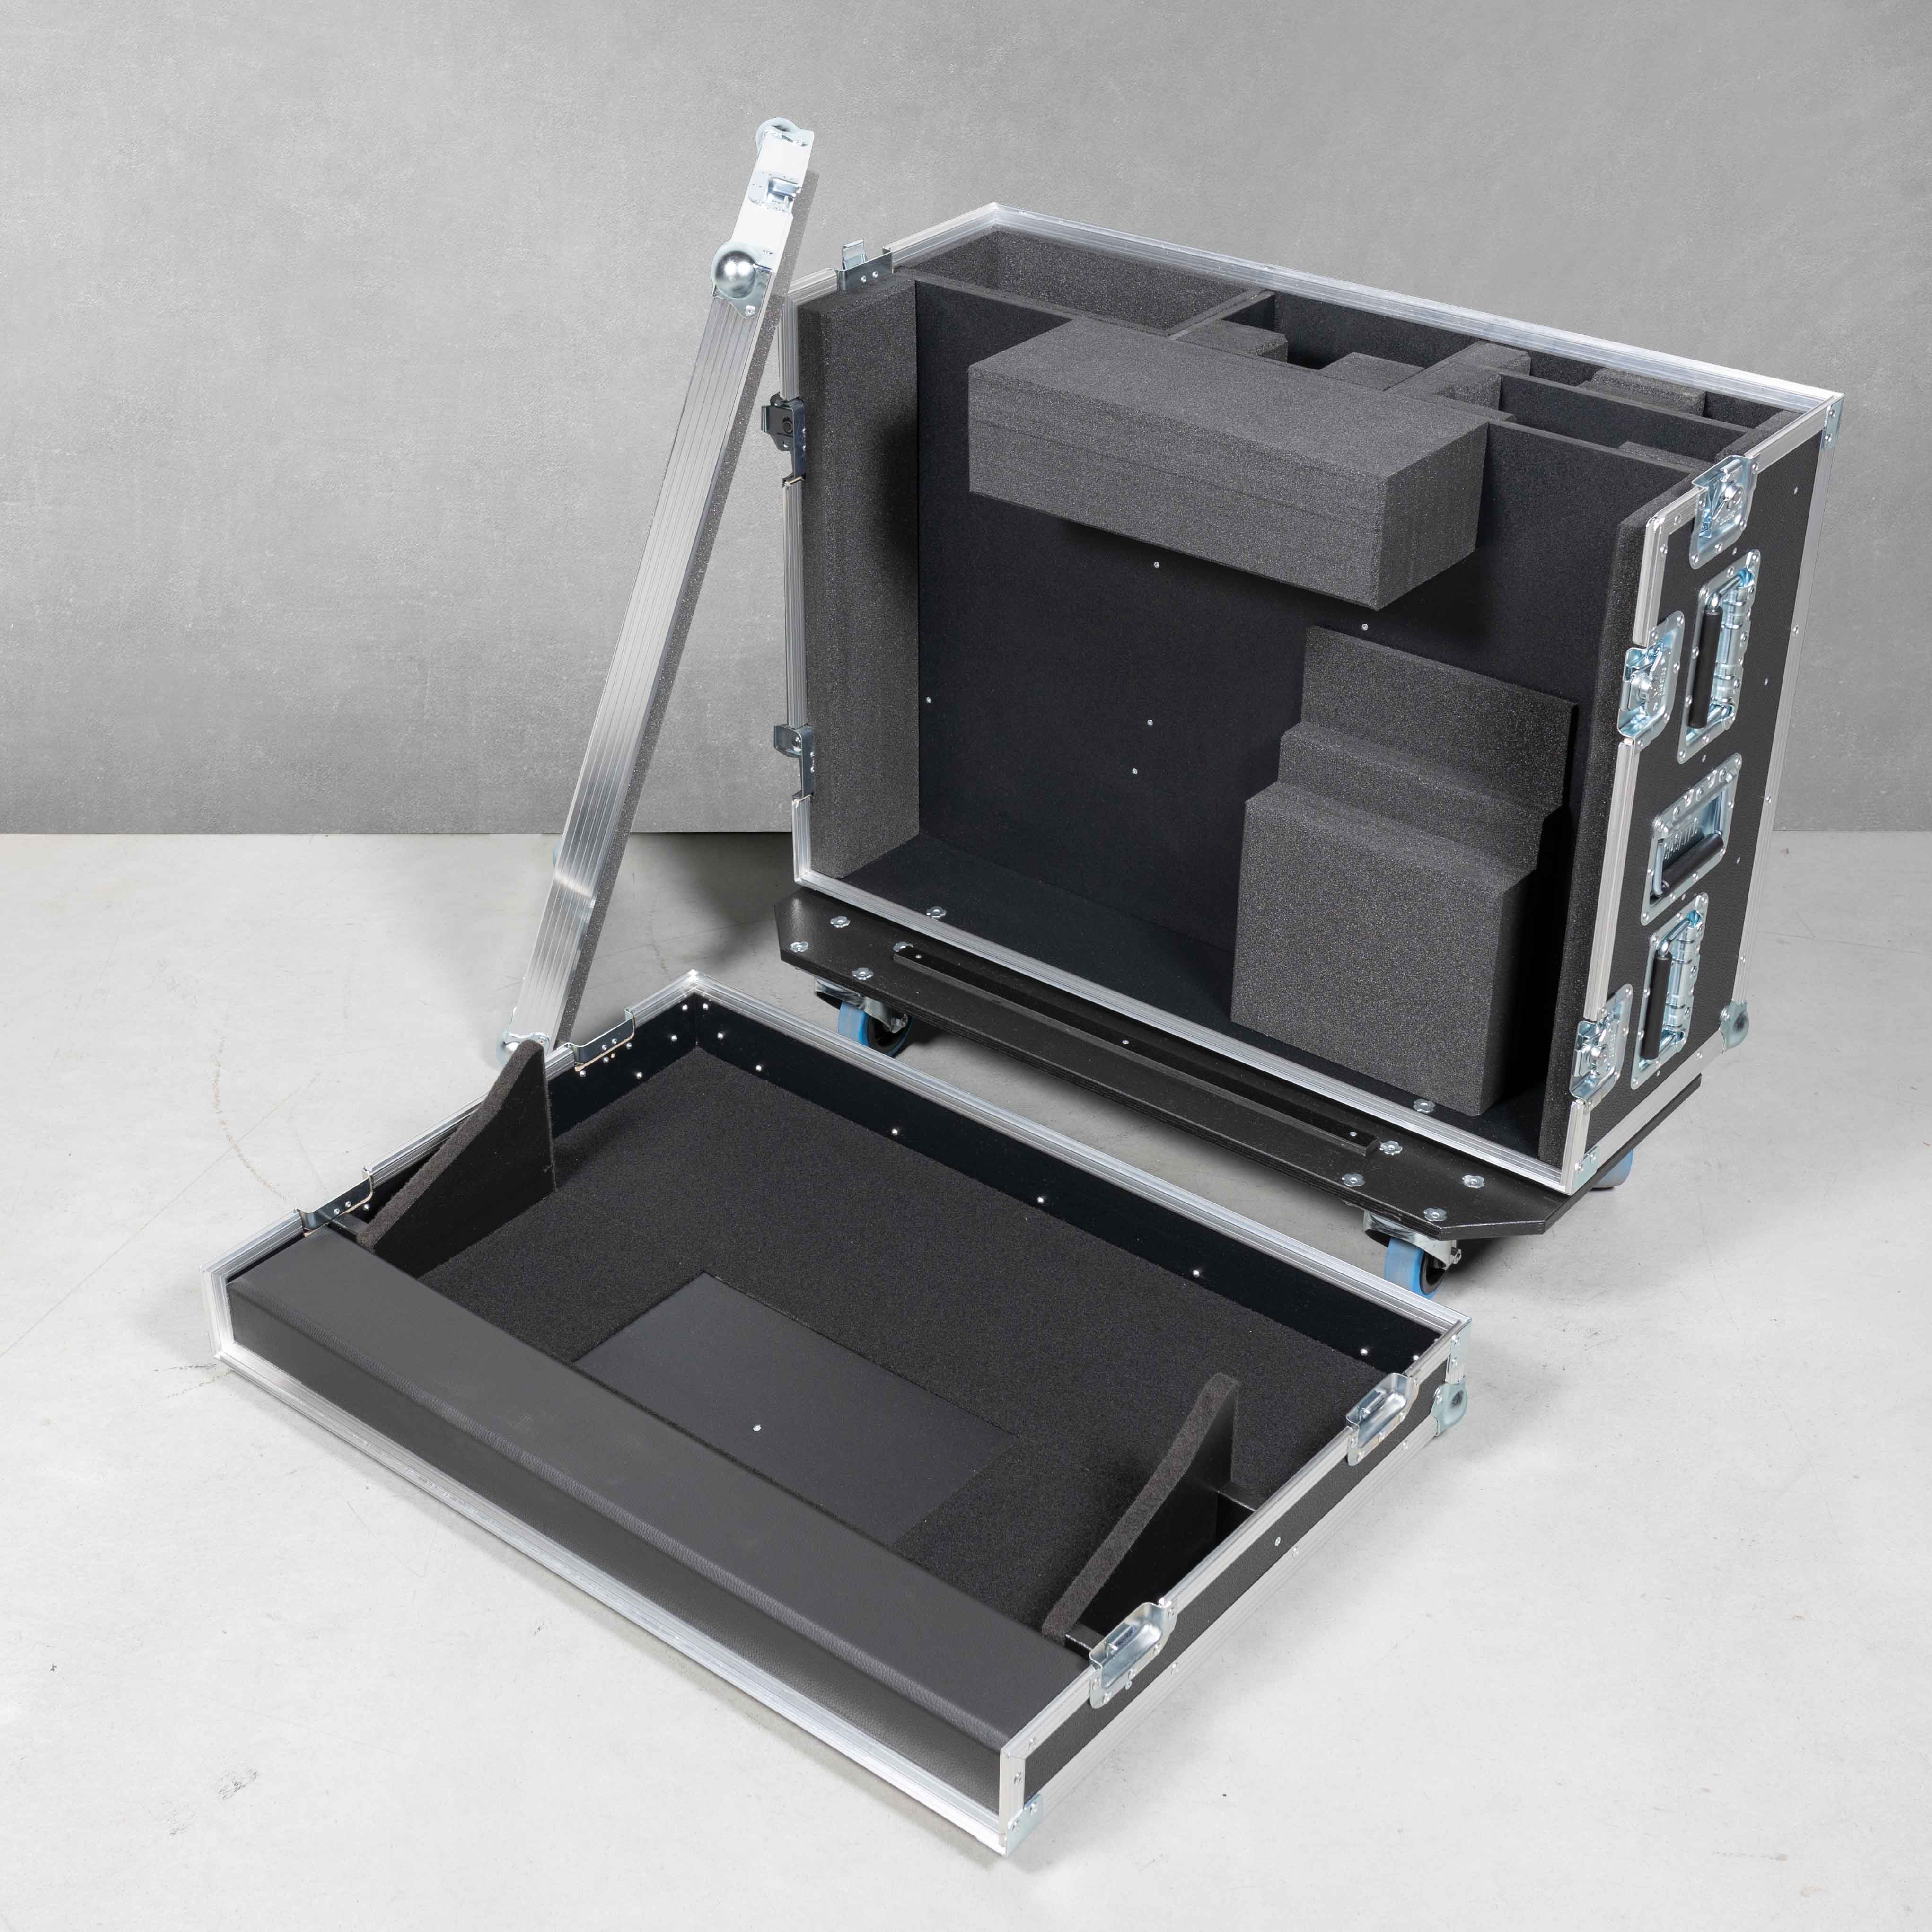 Haubencase für ein Ross Carbonite TouchDrive1 mit Monitor